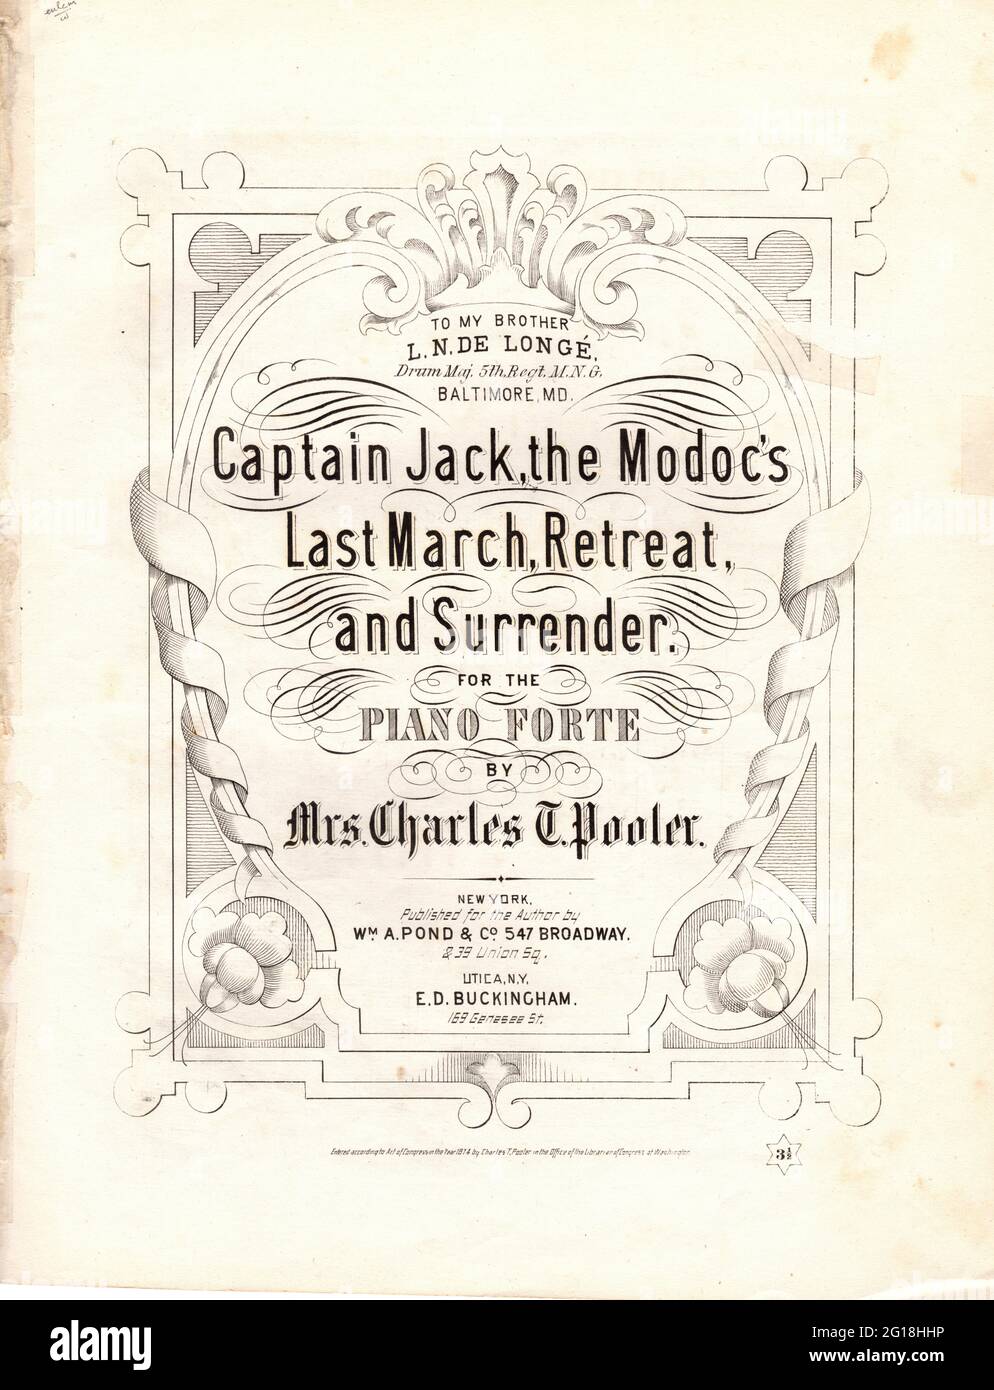 Captain Jack, The Modoc's Last March, Retreat and Surrender, Noten von Mrs. Charles Pooler. Herausgegeben von WM. Pond & Co., Boston, MA. 1874 Stockfoto